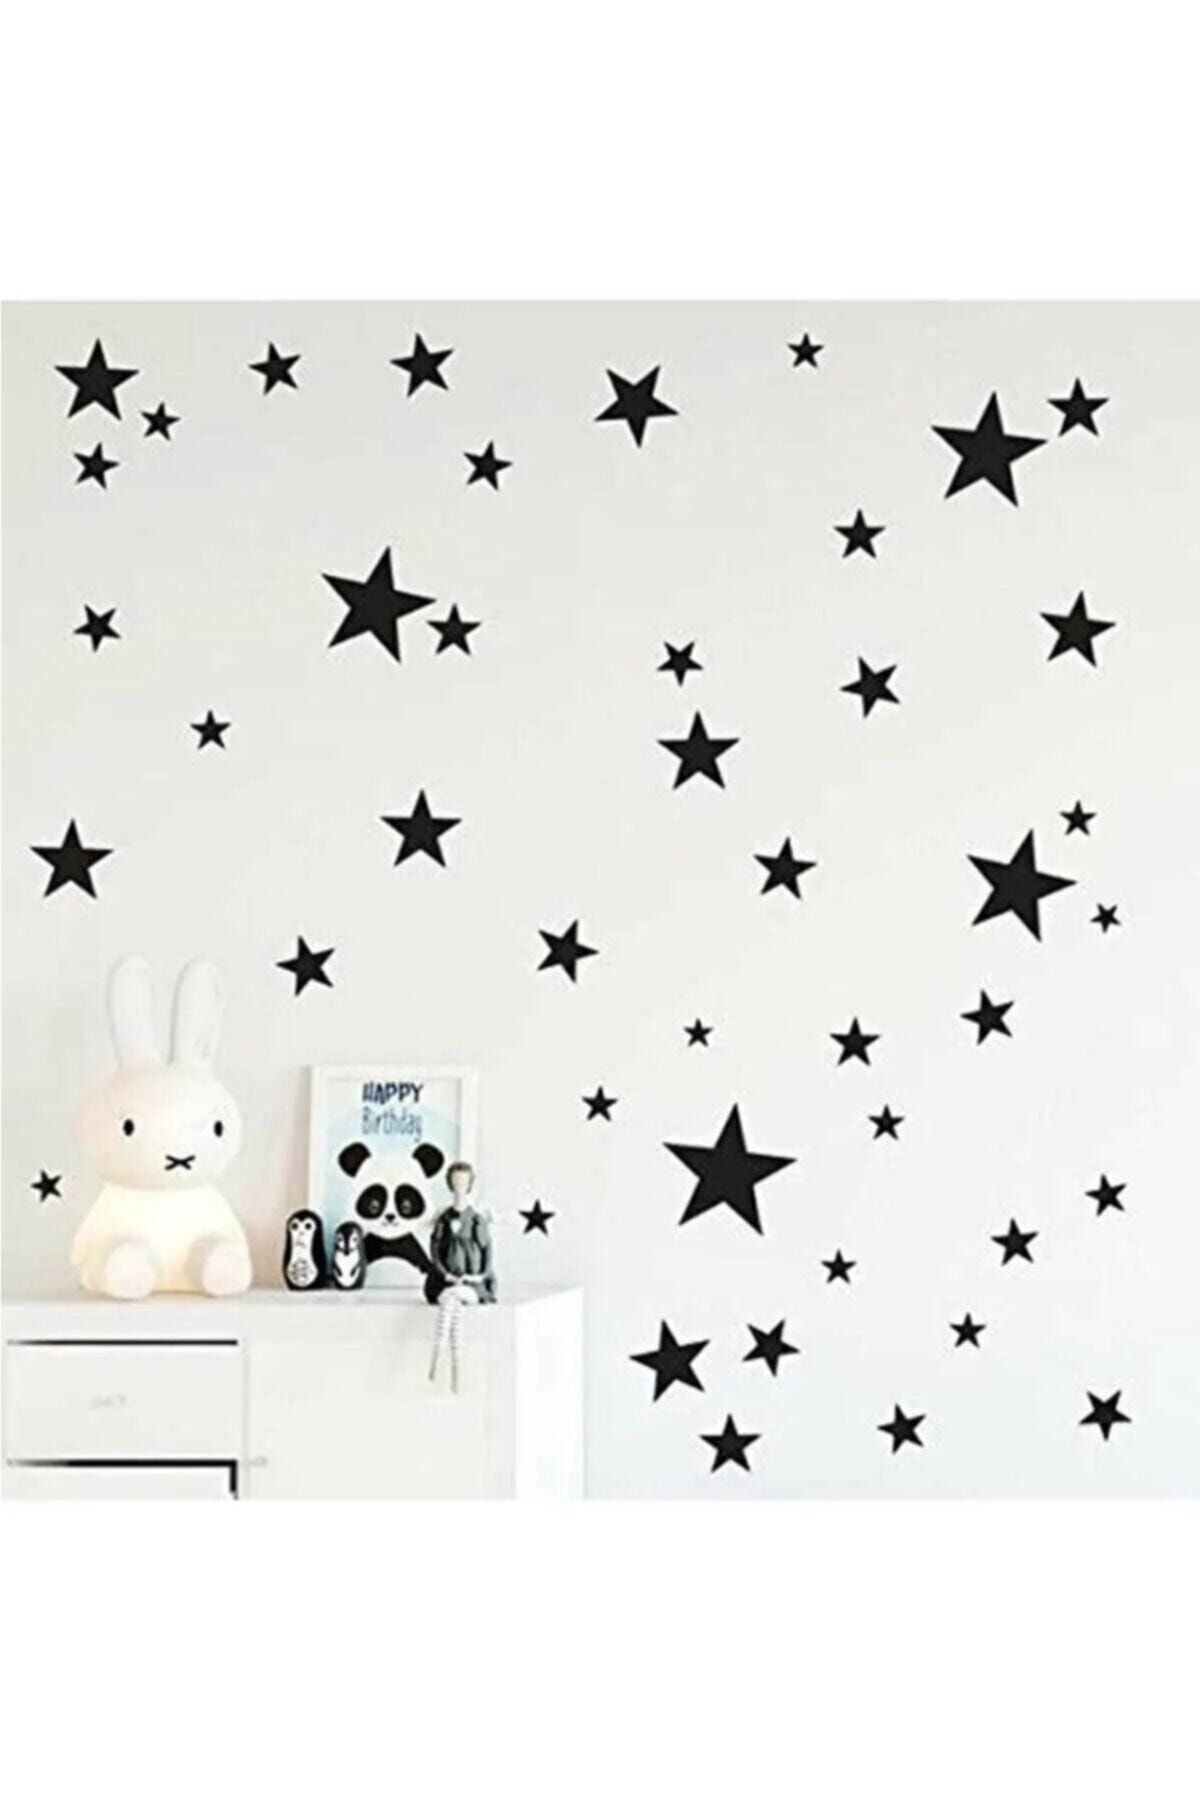 Walldeco Siyah Yıldız Duvar Sticker 3-4-5cm 144 adet